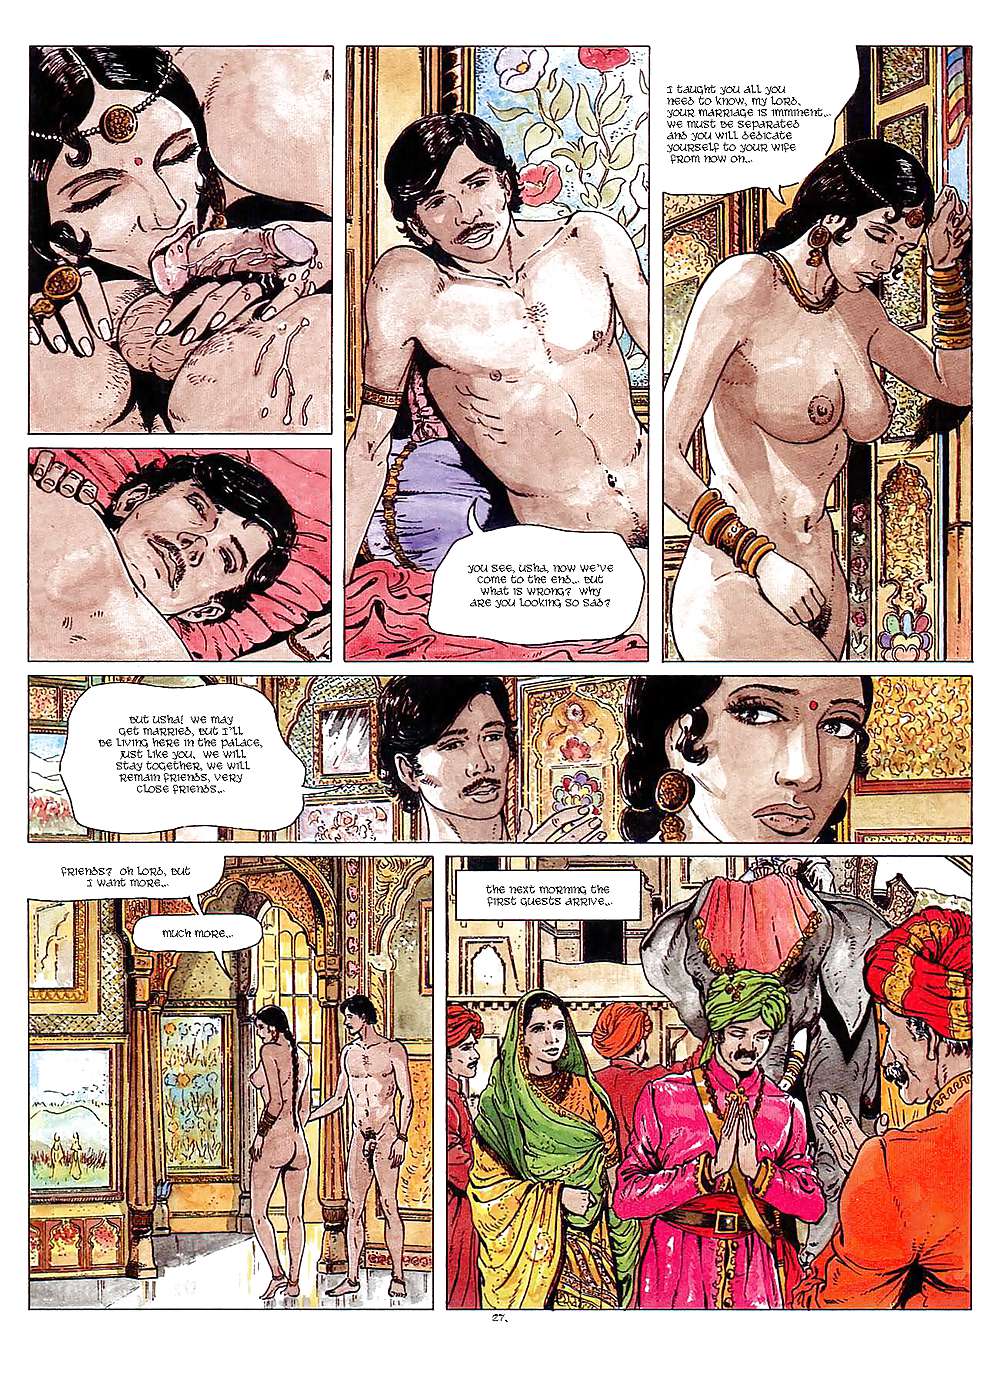 Erotic Comic Art 40 - Kama-Sutra #19691184